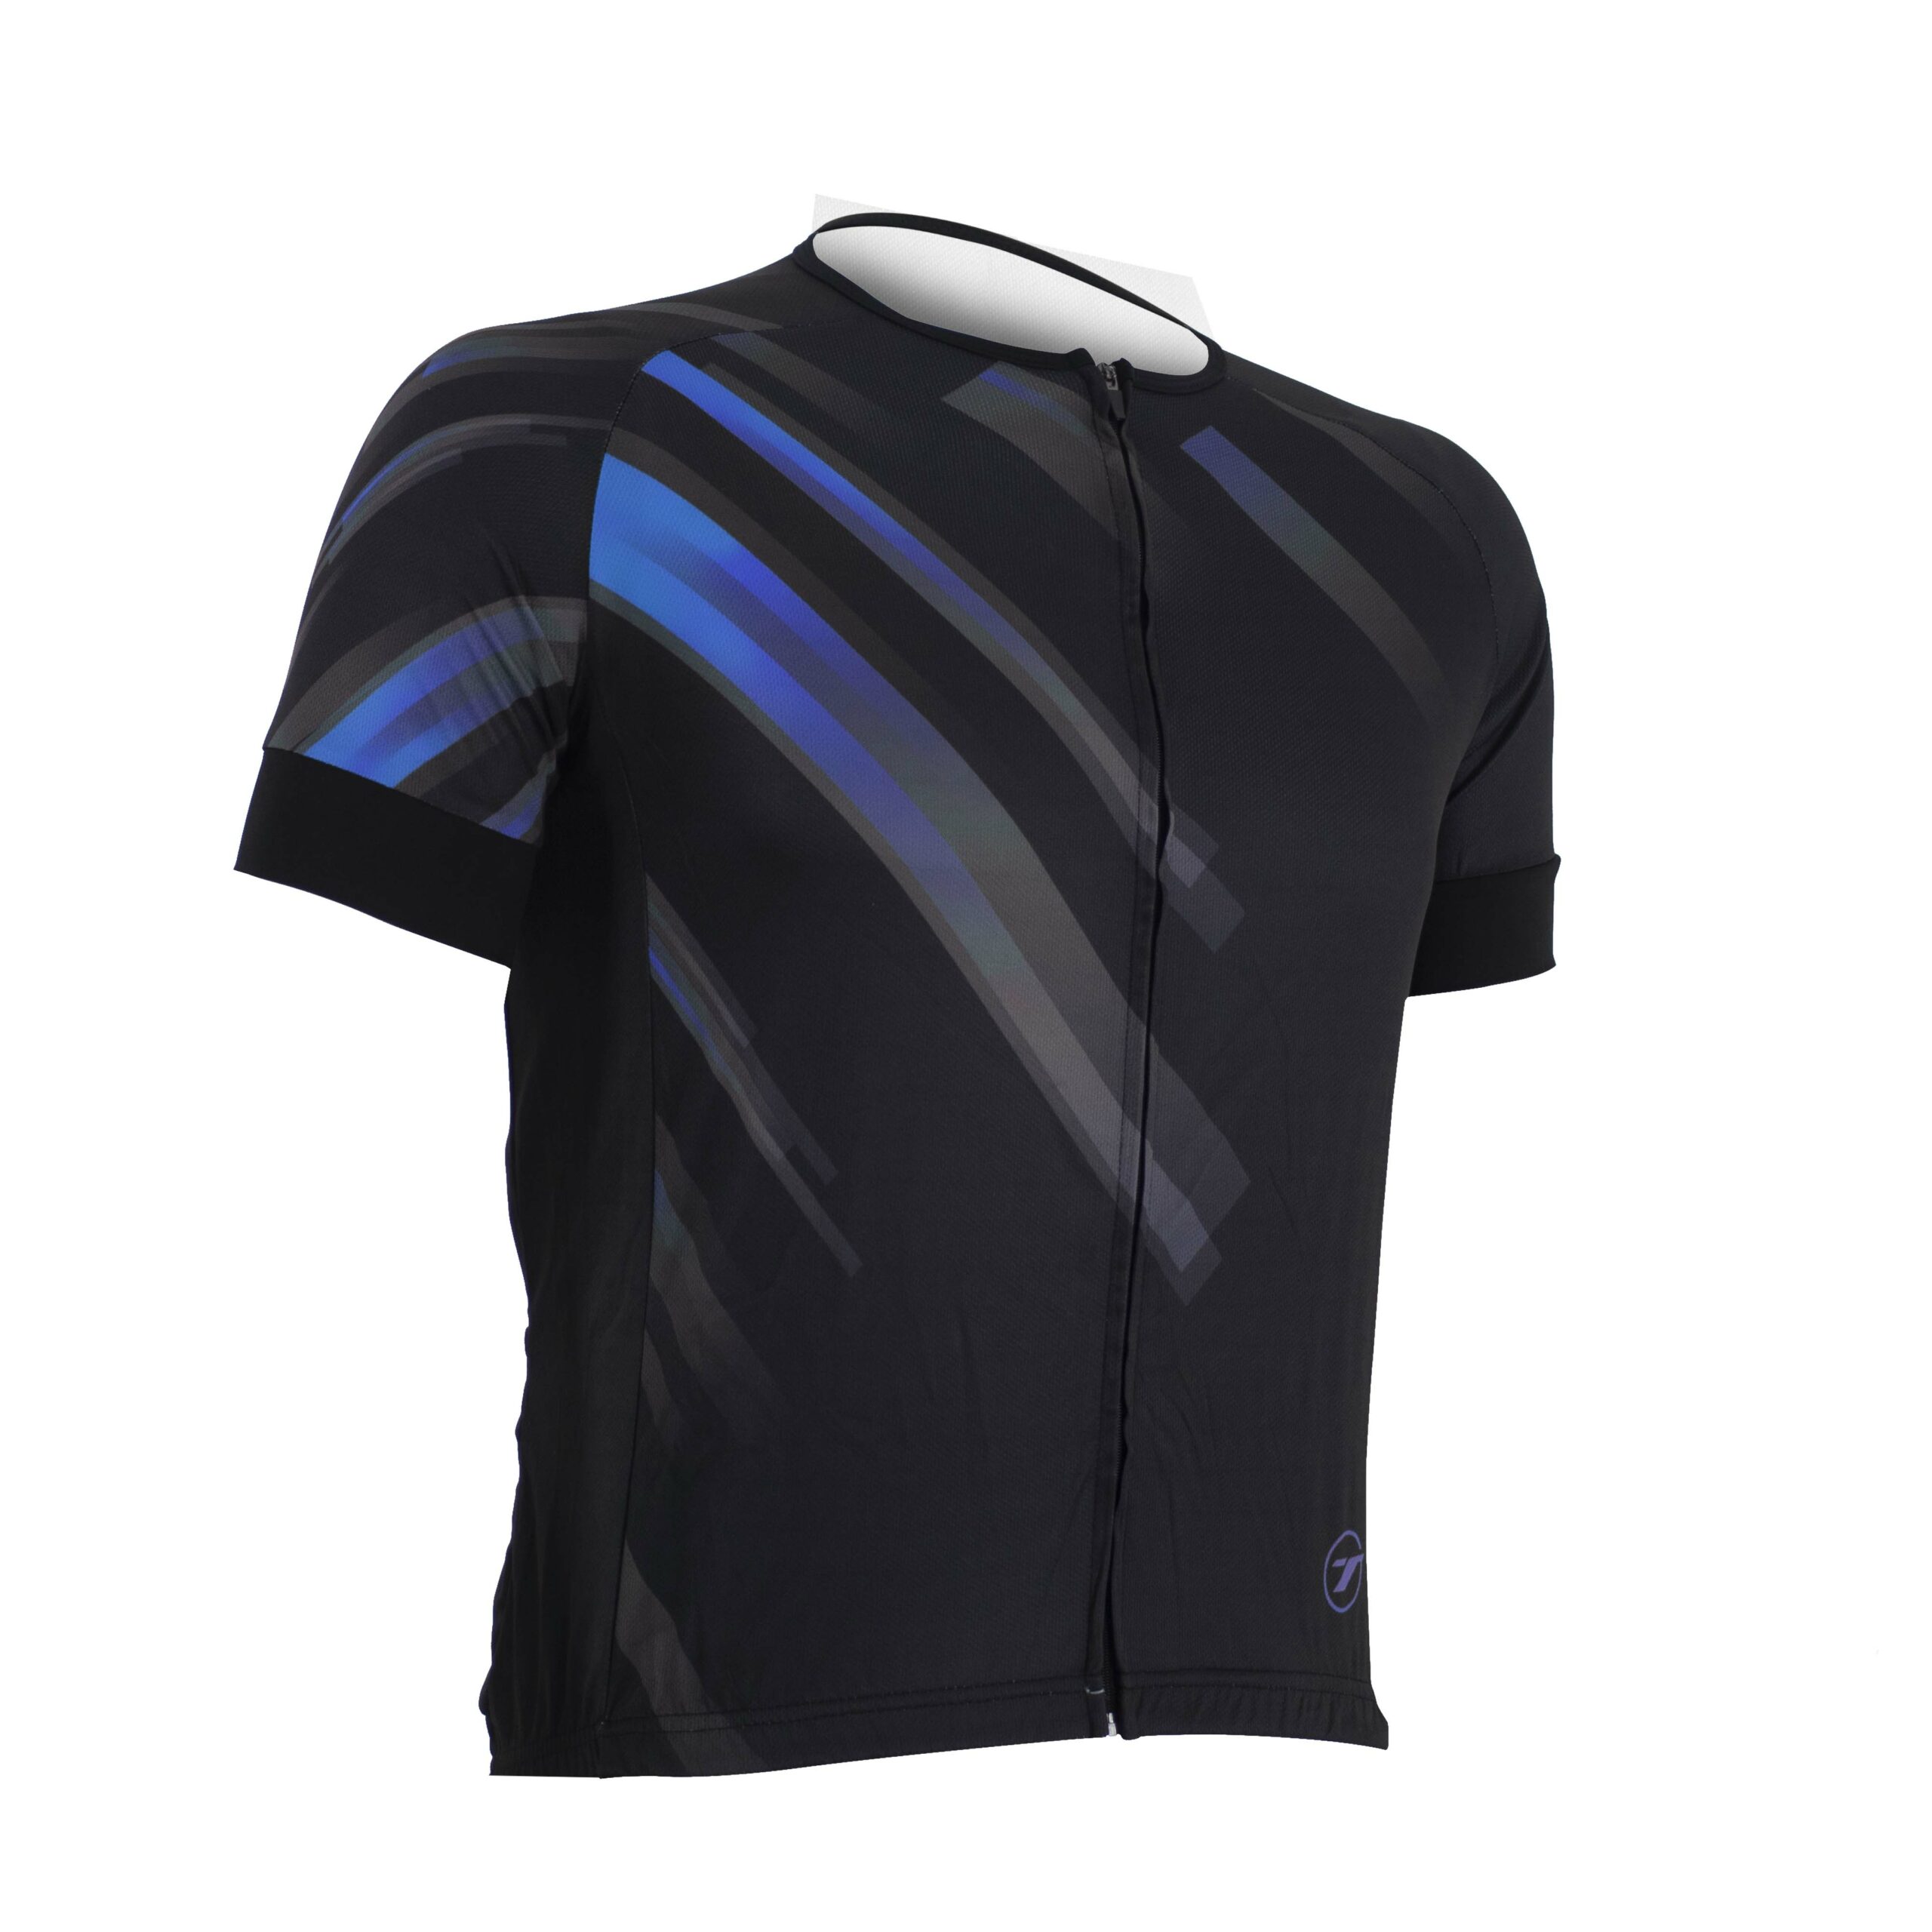 Camisa para ciclismo SUNNY | RIDE LINE - Preto/Azul, GG